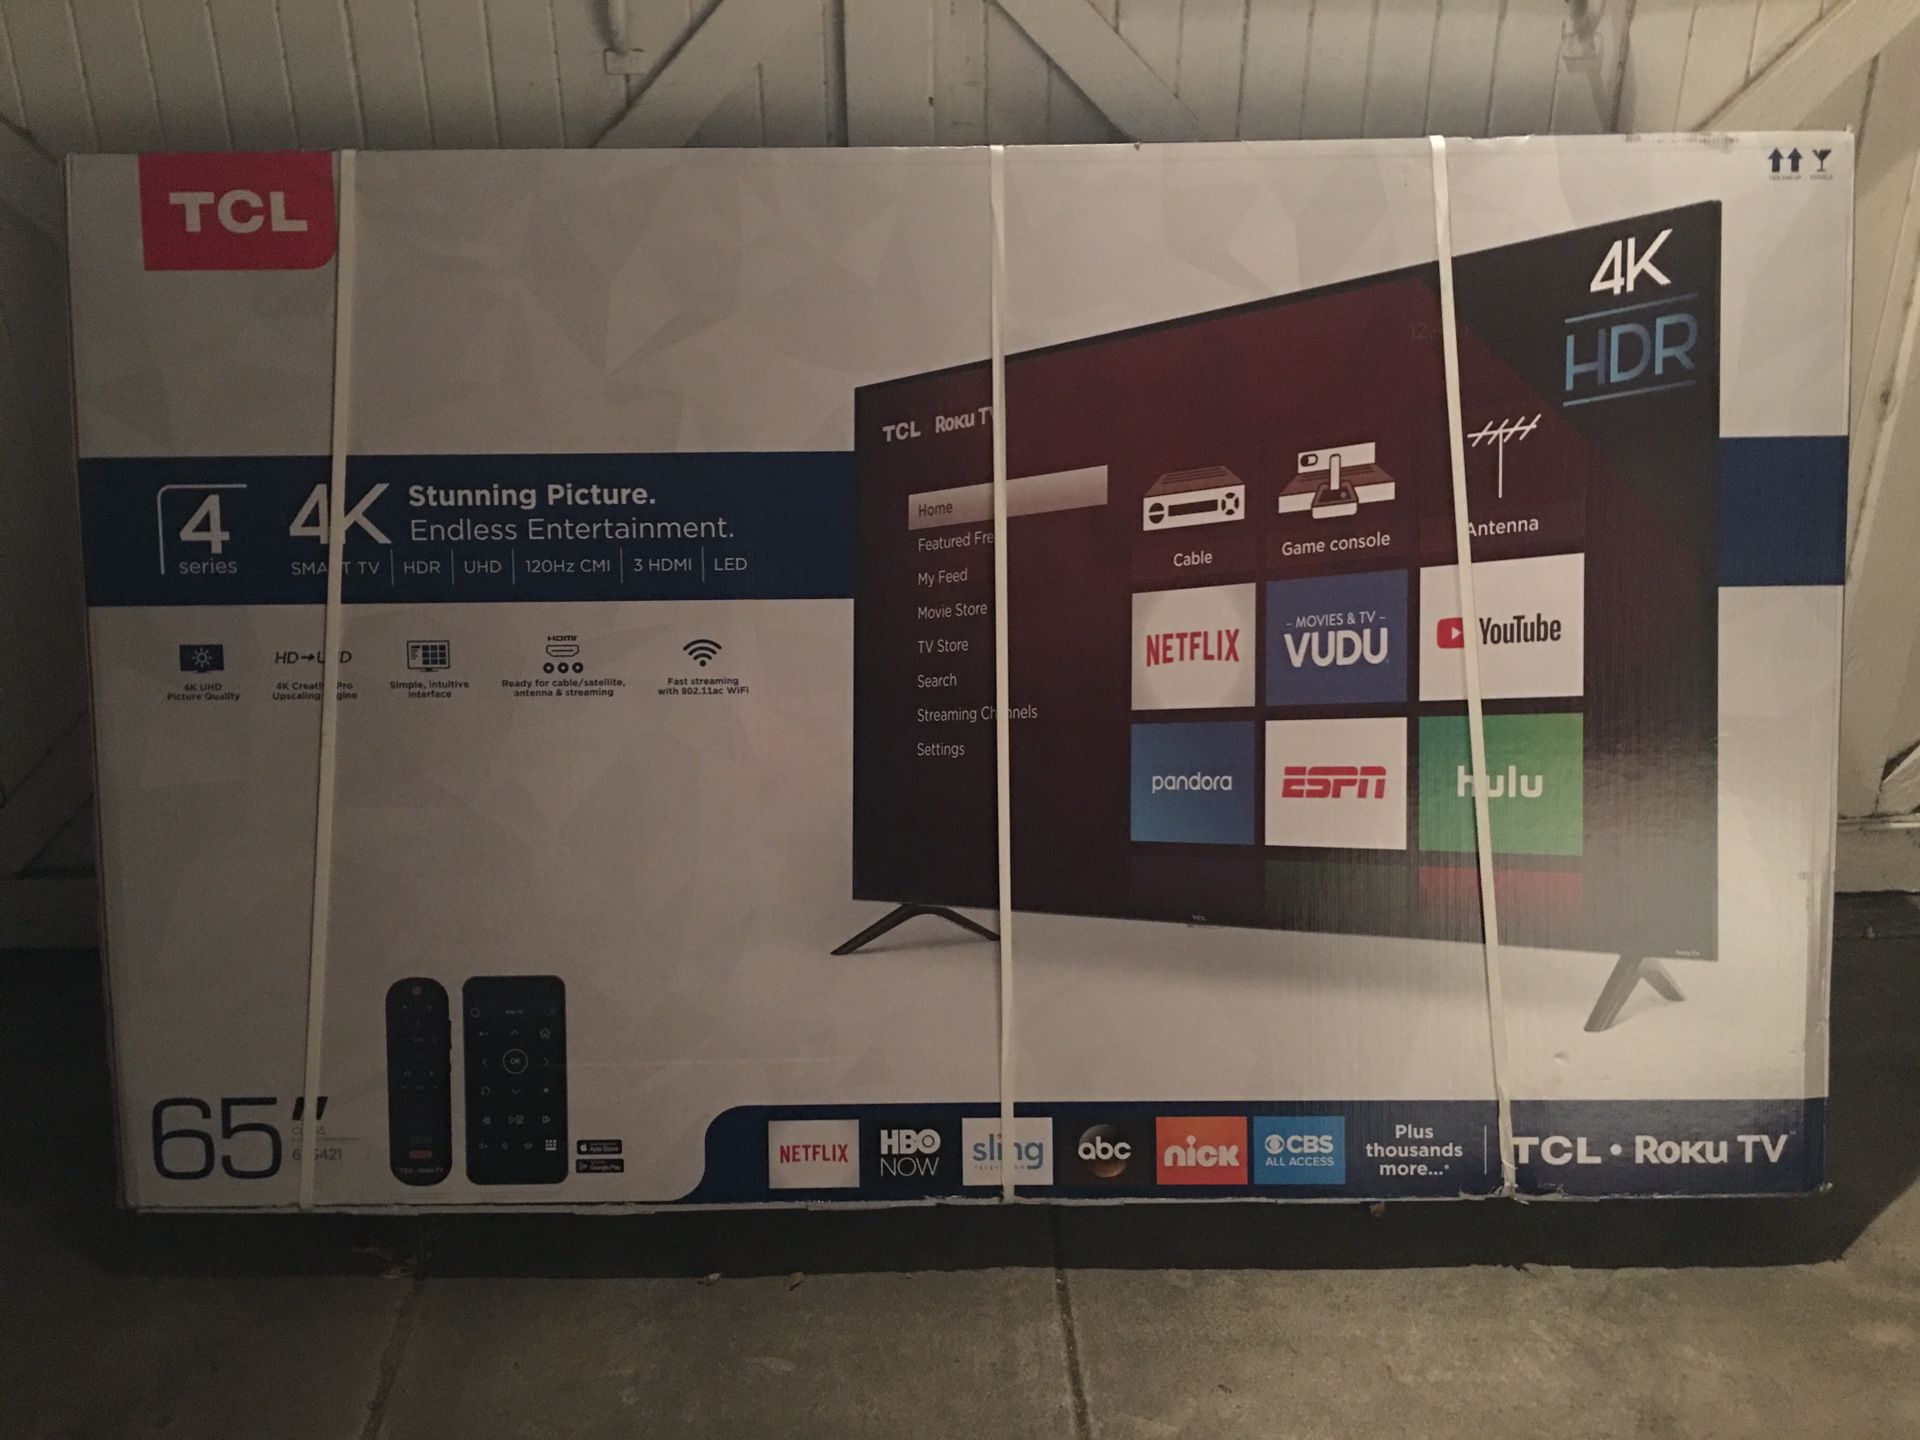 TCL 65” 4K ROKU SMART TV